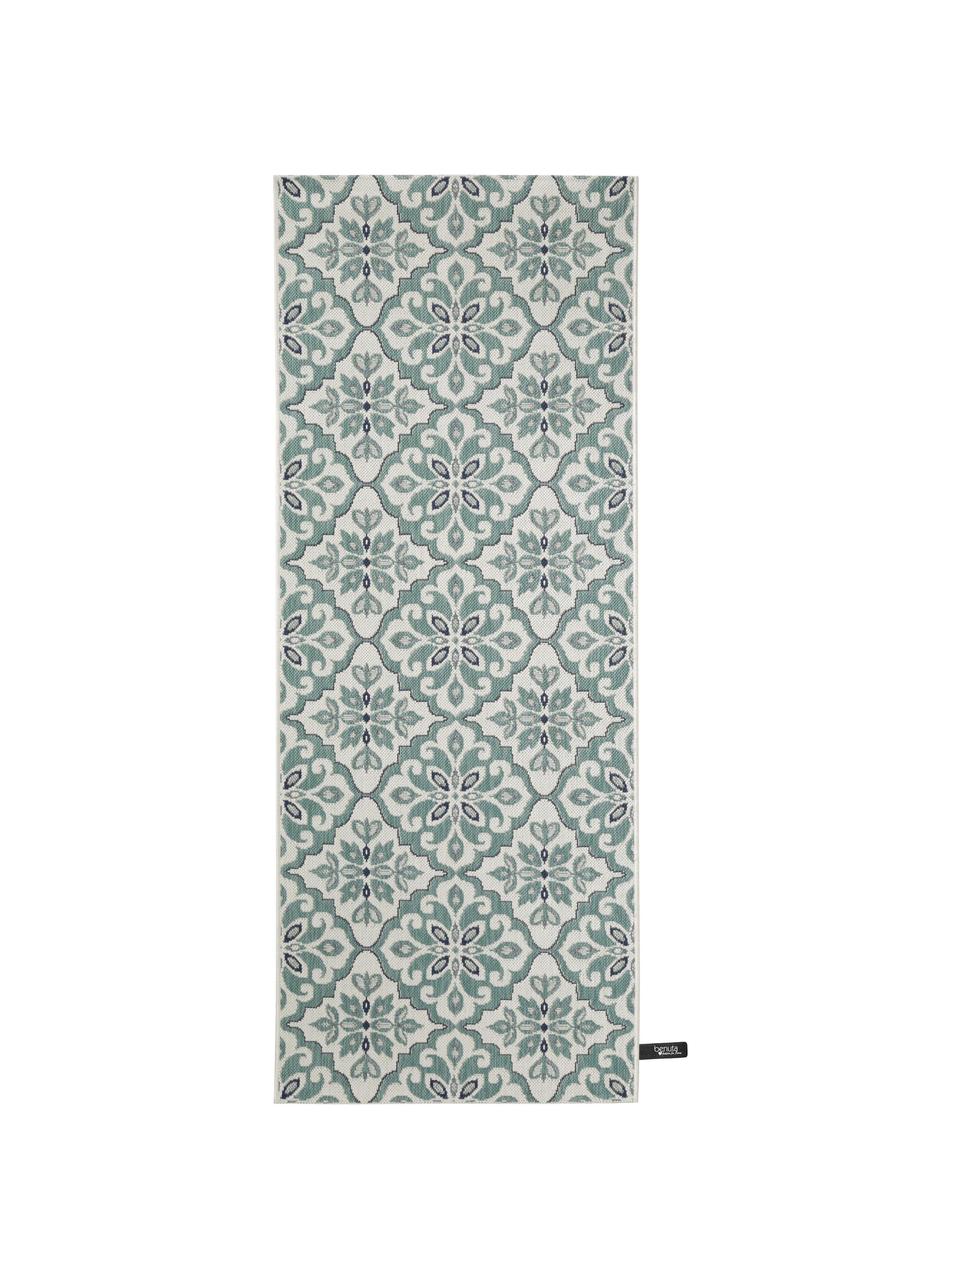 In- & Outdoor-Läufer Capri mit floralem Muster, 100% Polypropylen, Beige, Türkis, Schwarz, B 80 x L 200 cm 